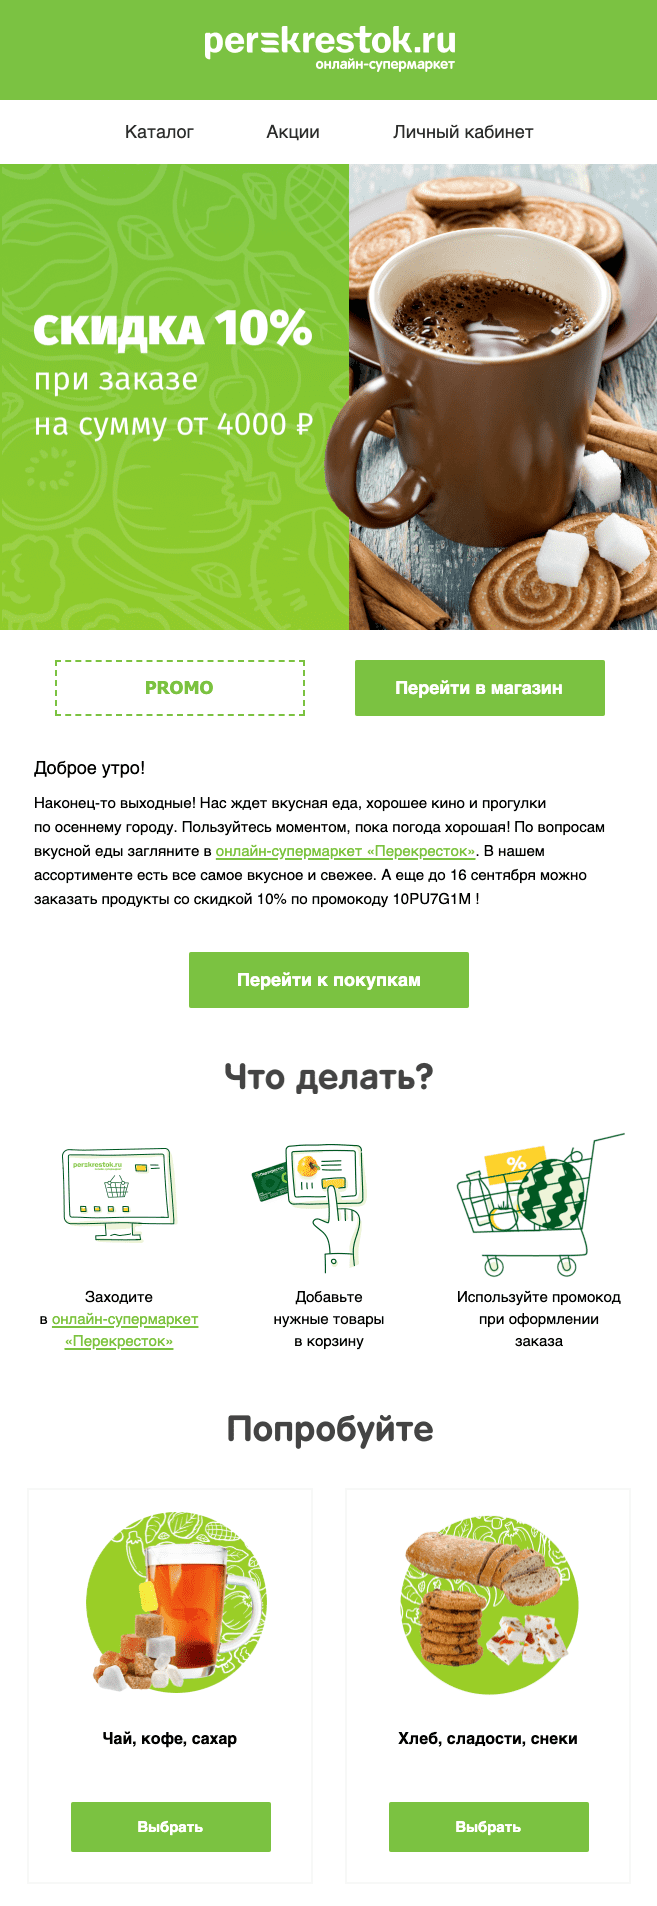 Perekrestok.ru проводит совместные акции с самыми разнообразными партнерами: от ivi.ru до Макдональдса